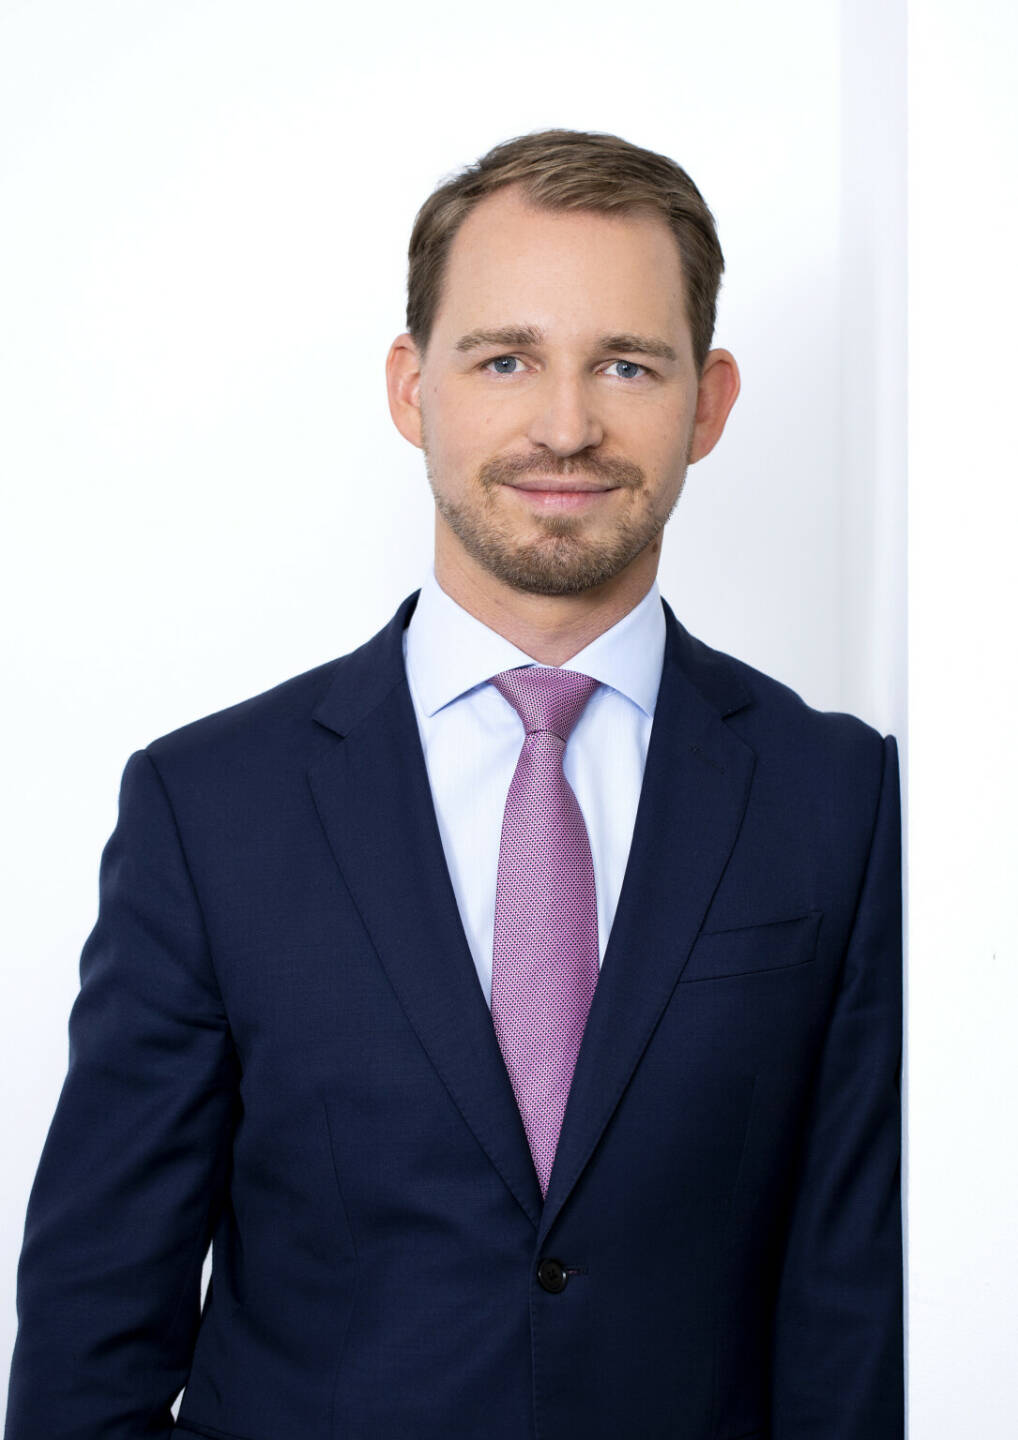 Stephan Karigl, Steuerberater und Wirtschaftsprüfer, wurde mit Anfang 2022 Partner im Bereich Tax/BPS bei Deloitte Österreich. Credit: Deloitte/feelimage